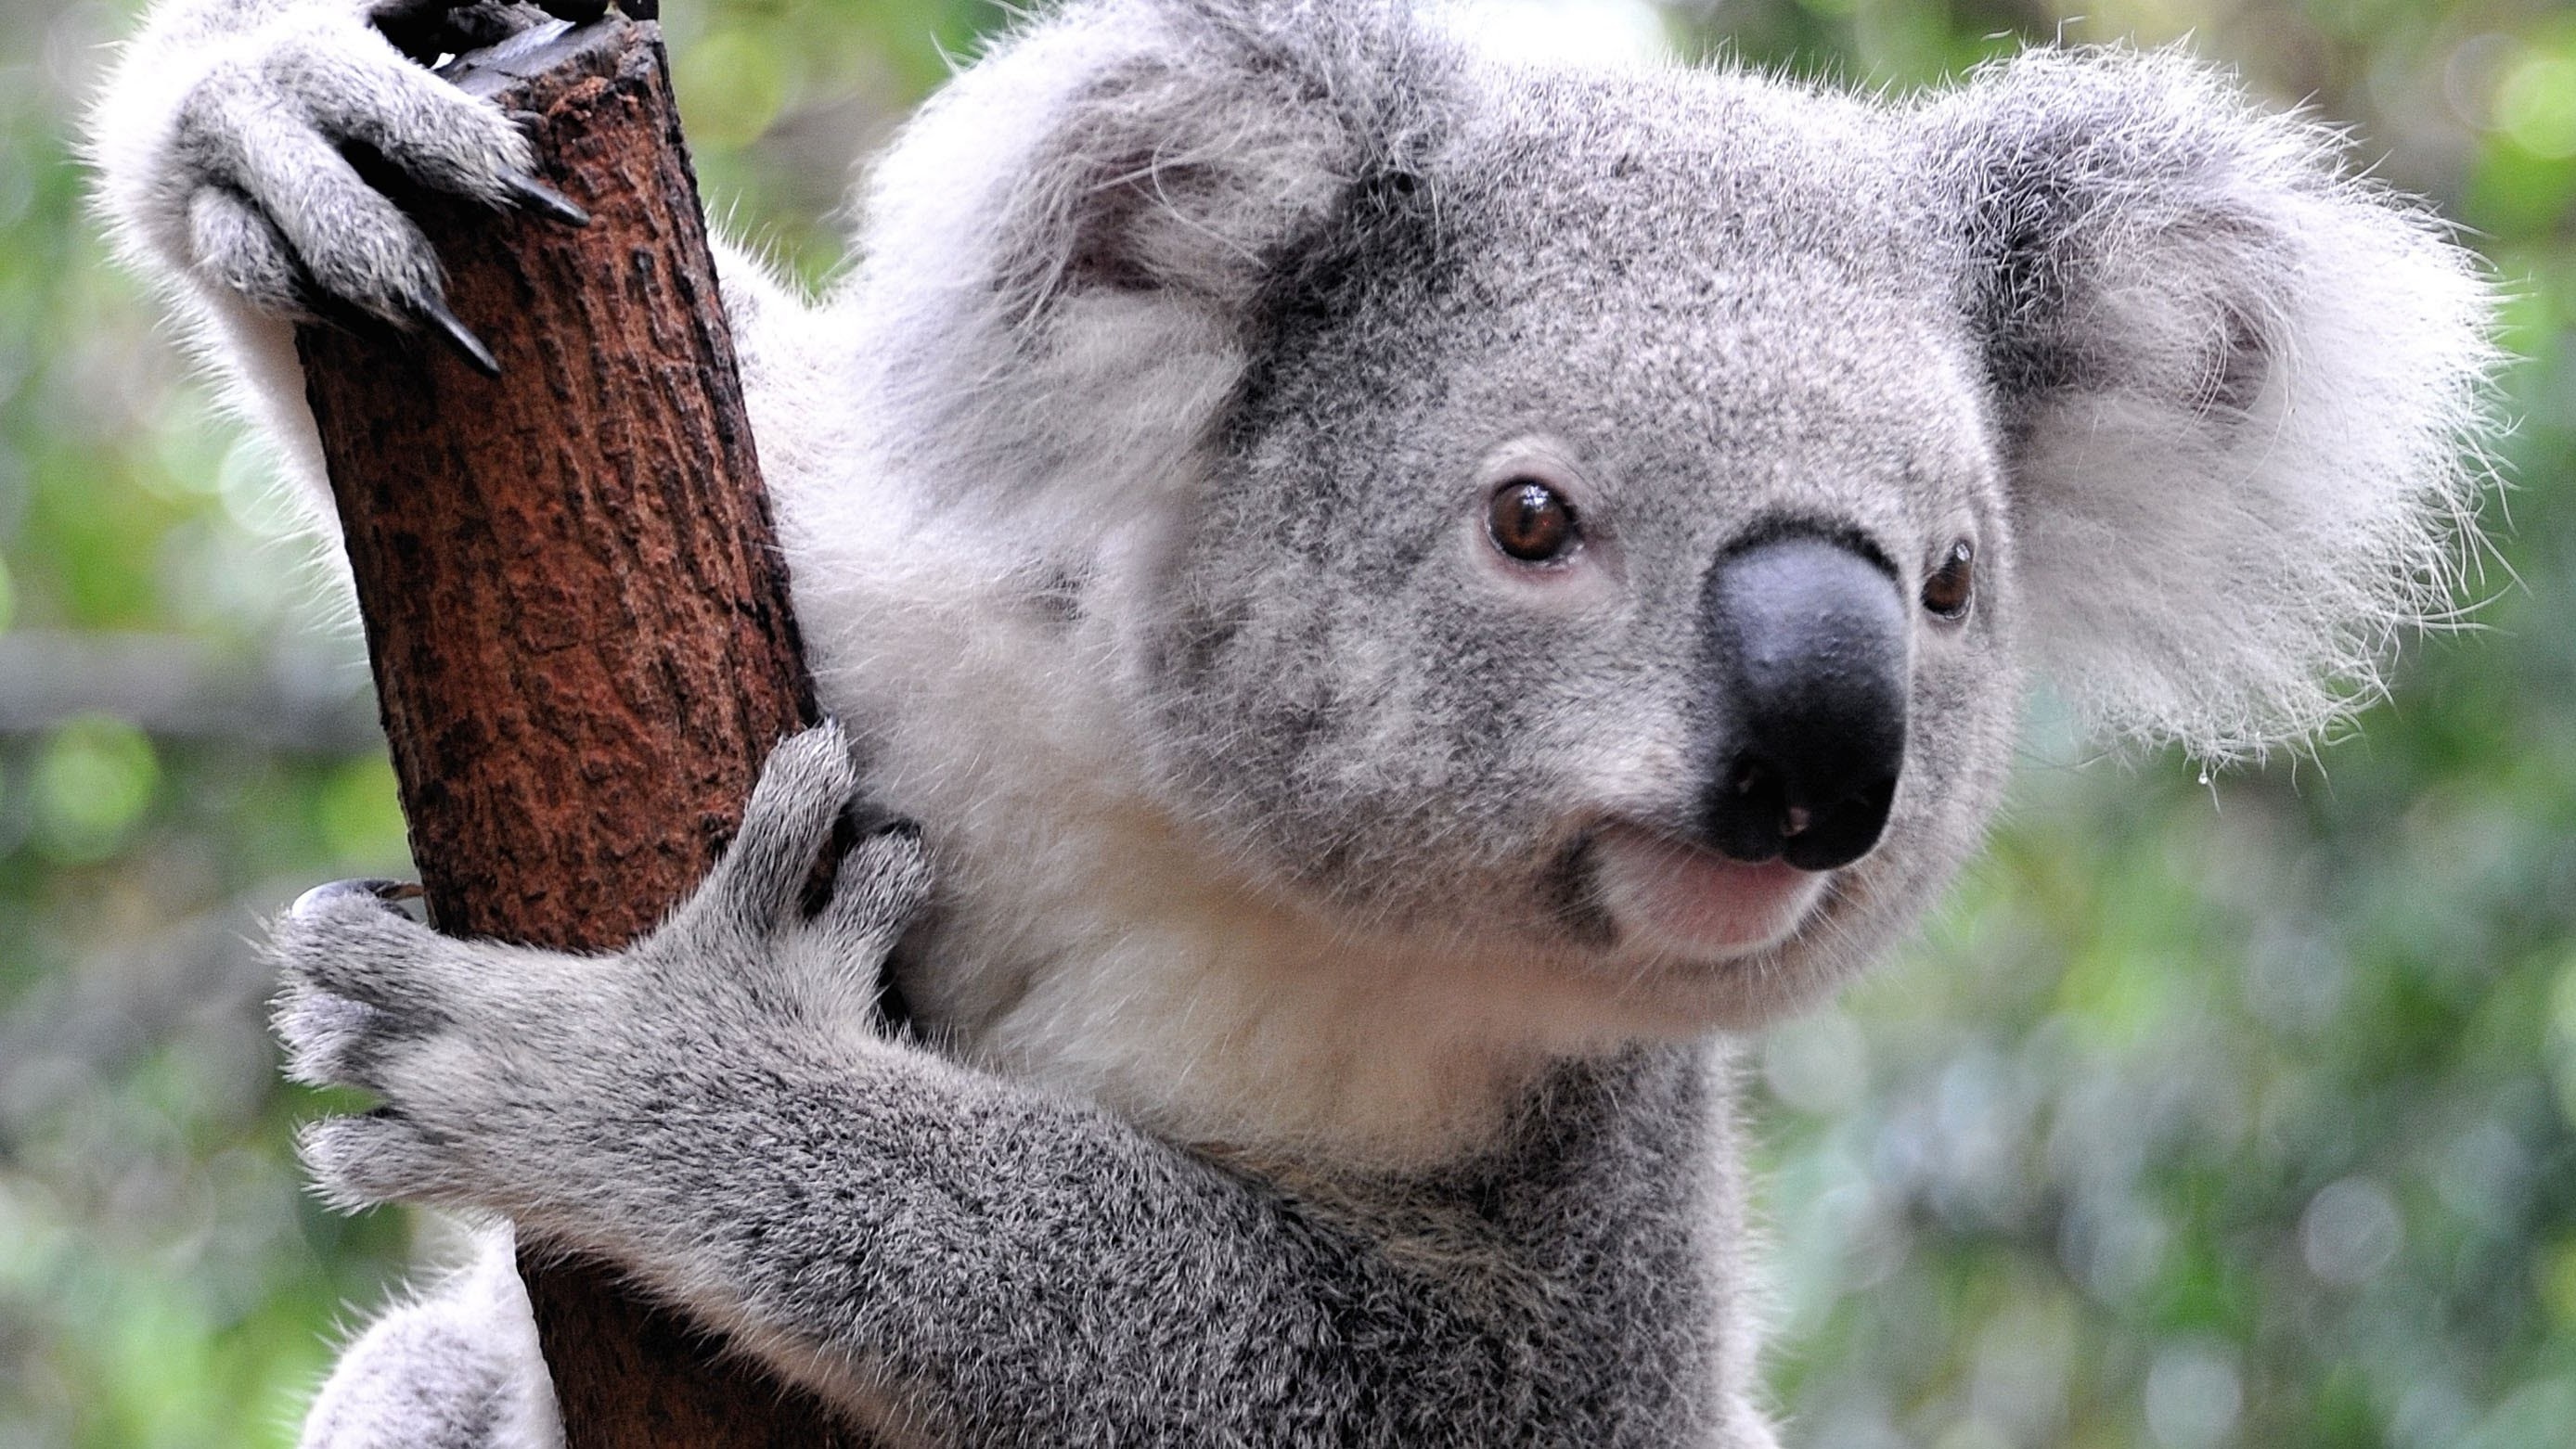 Koalas mammals, HD desktop, Mobile backgrounds, 2780x1570 HD Desktop